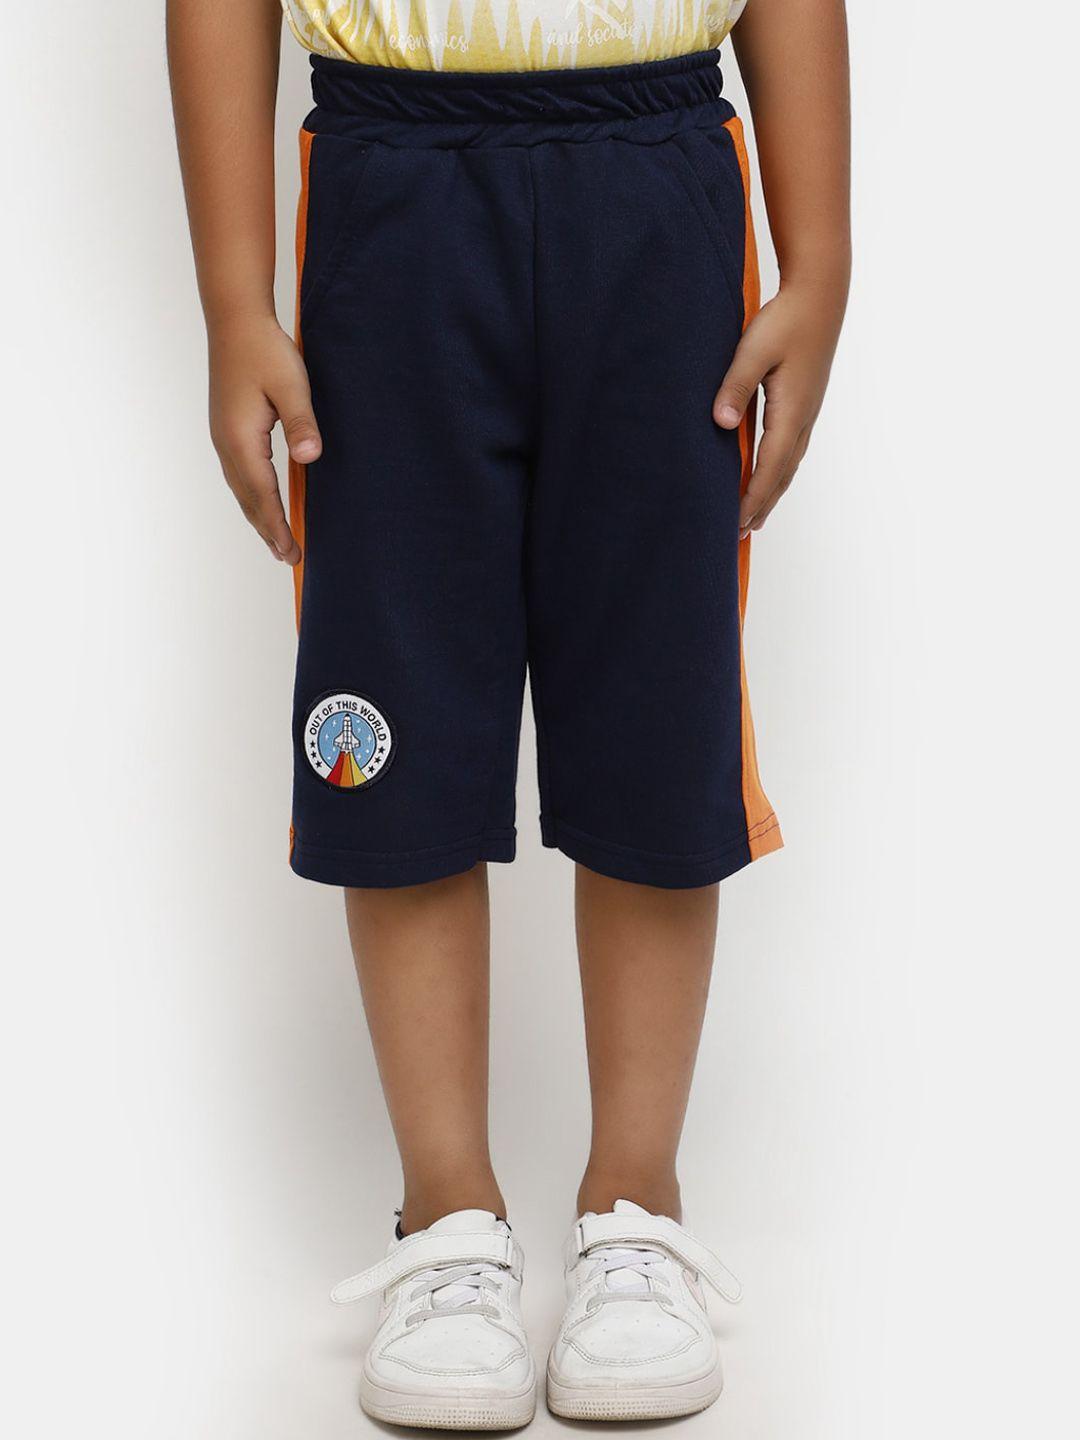 v-mart boys mid-rise cotton shorts